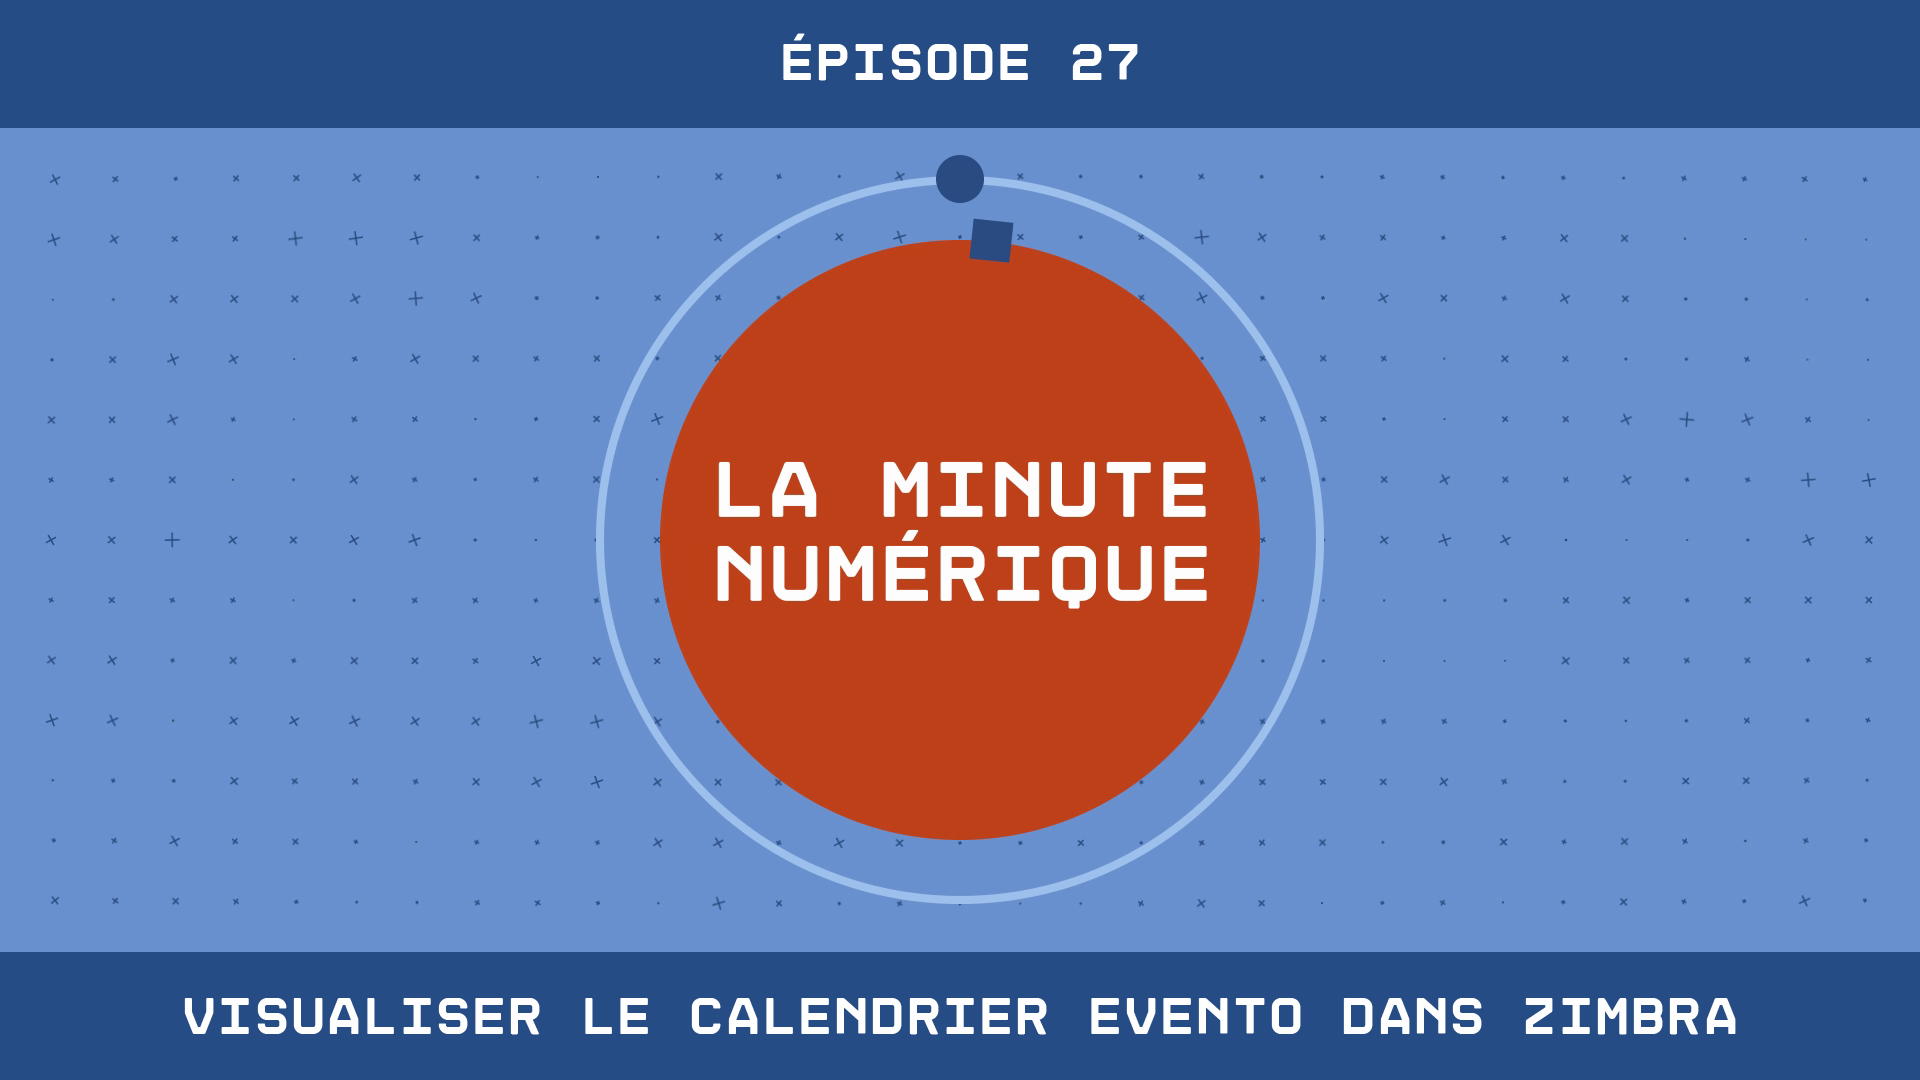 La Minute Numérique - Épisode 27 Visualiser le calendrier Evento dans Zimbra